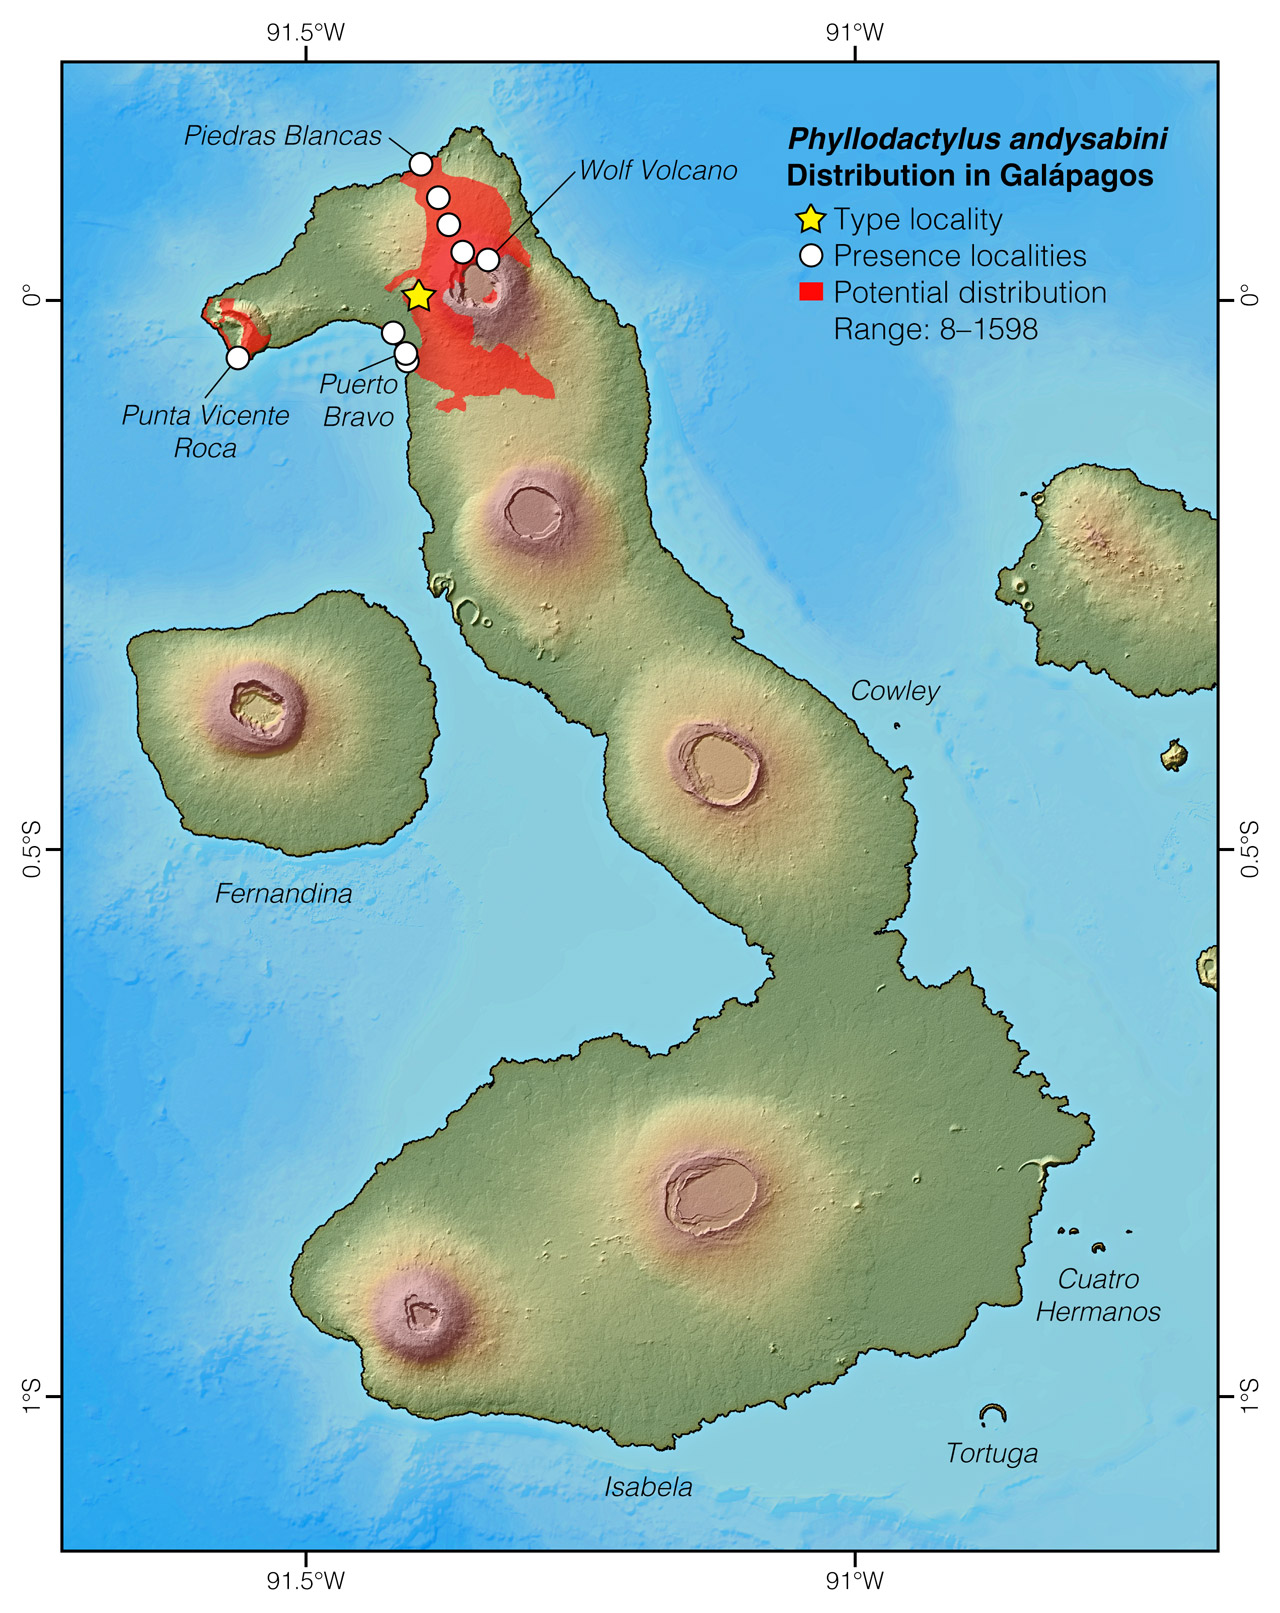 Distribution of Phyllodactylus andysabini in Isabela Island